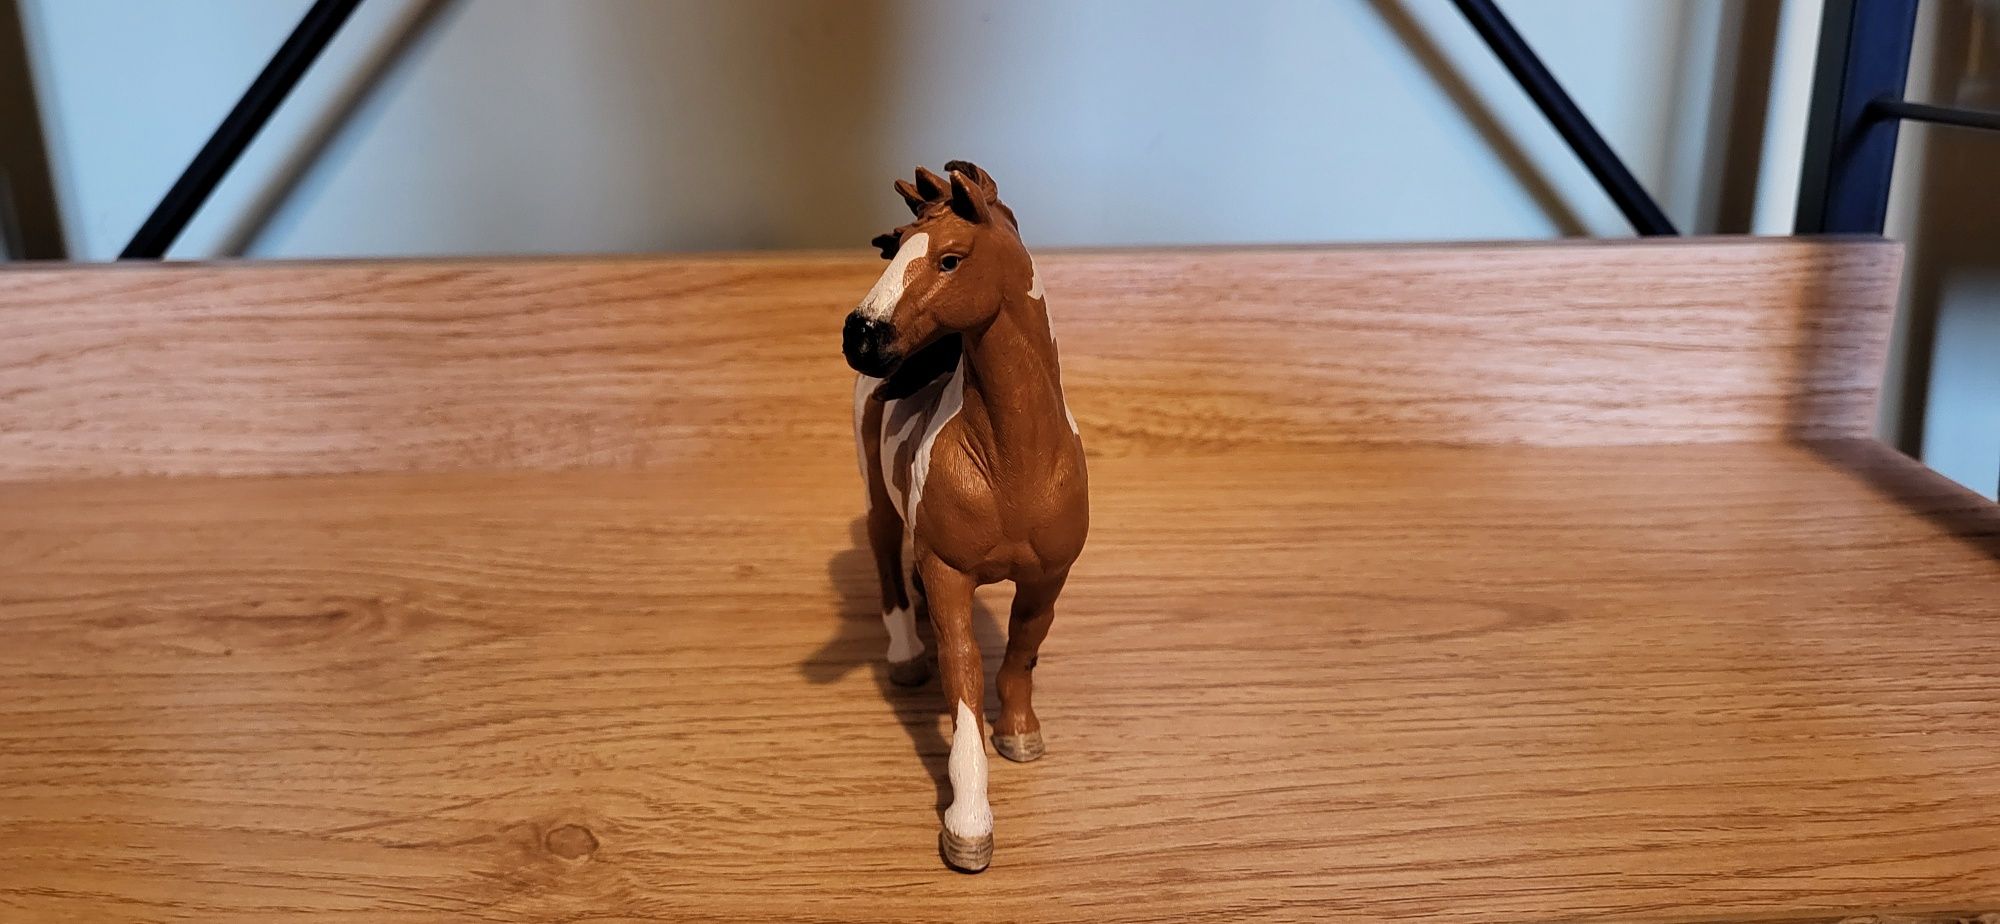 Schleich koń pinto ogier figurka model z 2014 r.